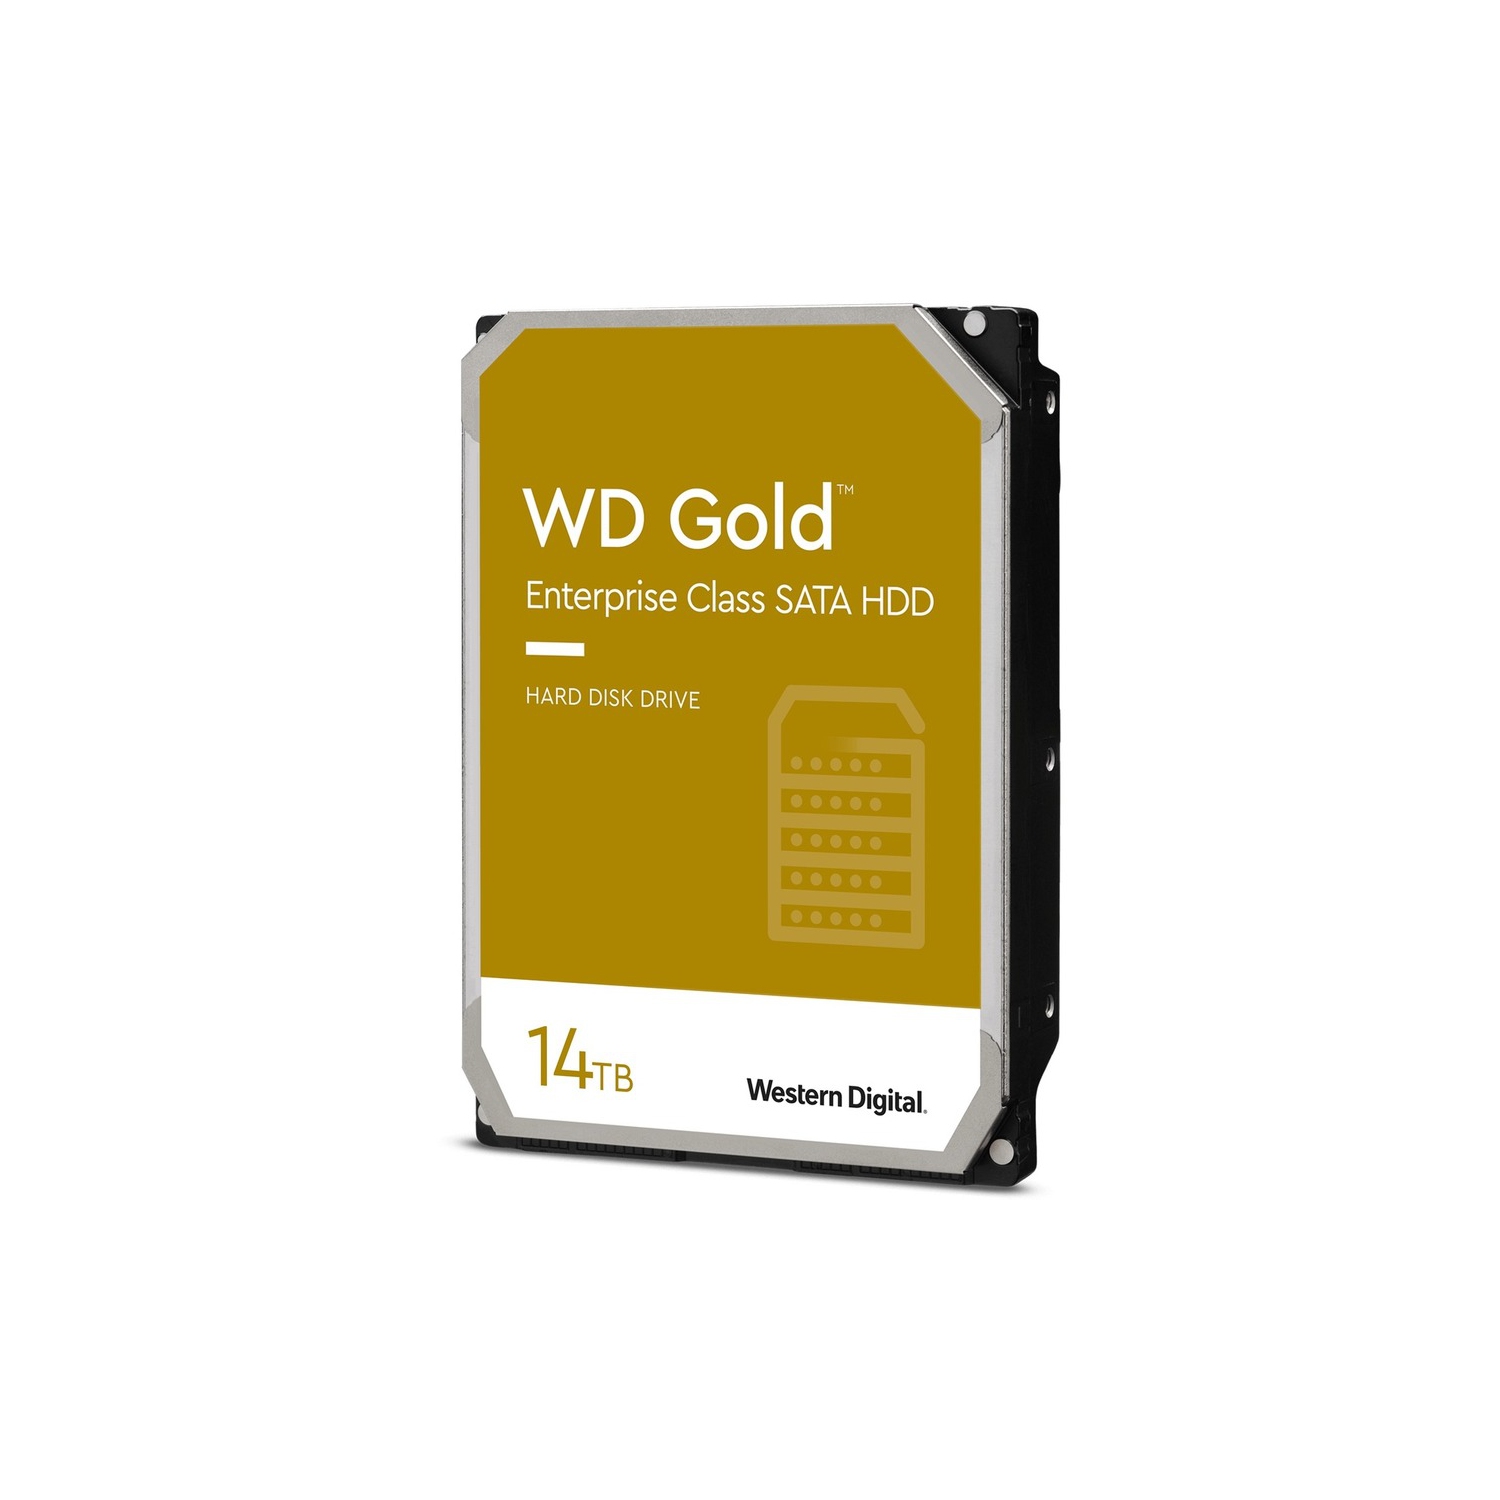 Western Digital Gold Enterprise Class SATA HDD Internal Storage, 14TB WD141KRYZ